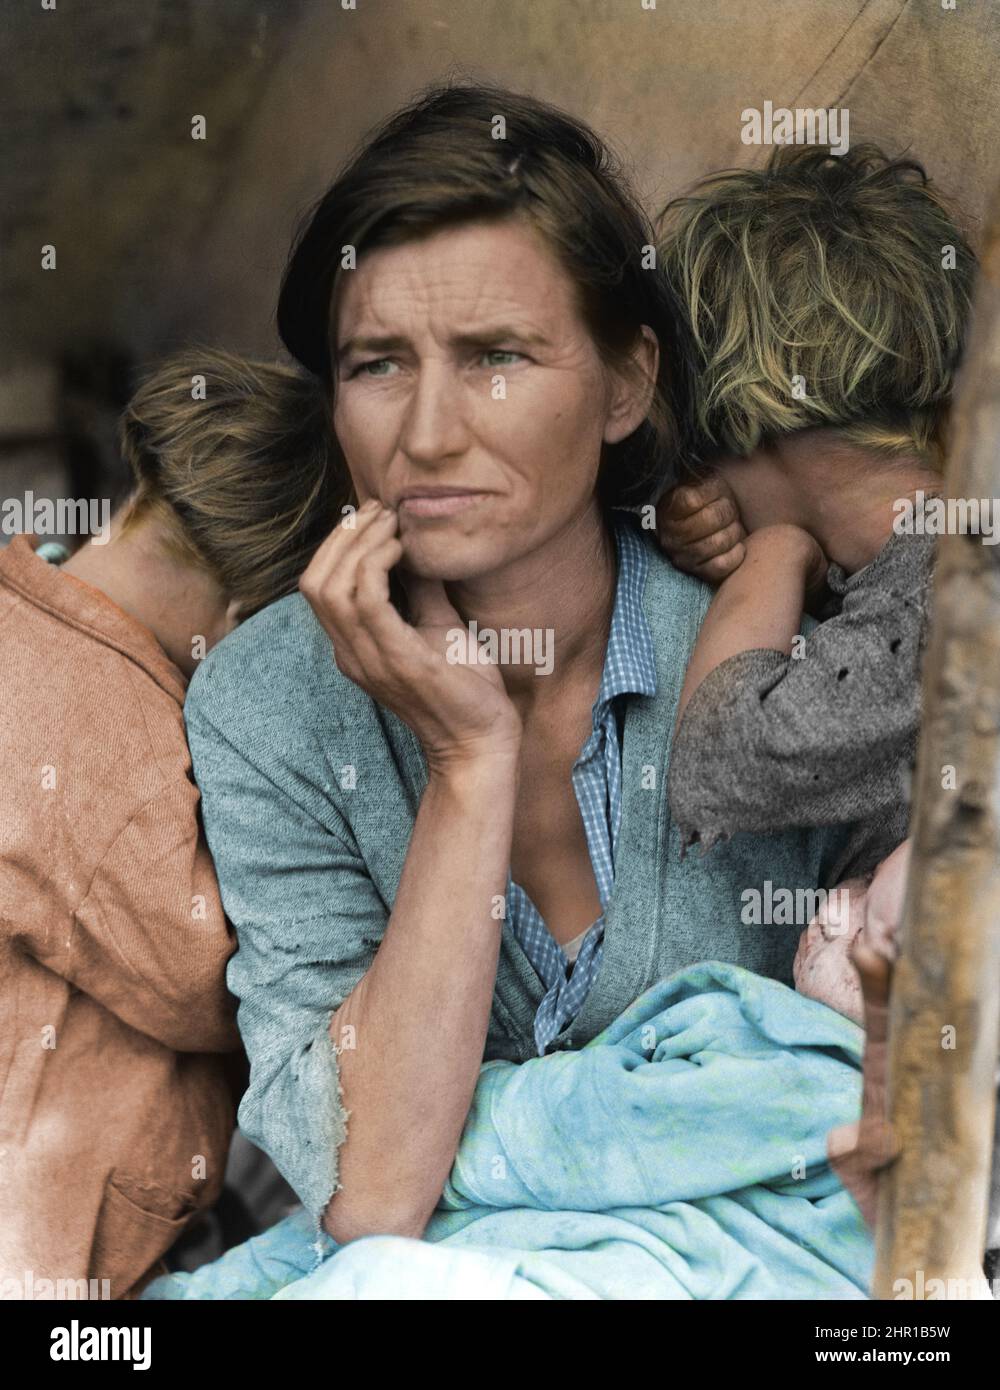 Dorothea lange, die ikonische Migrantenmutter, symbolisiert den Hunger und die Armut, die viele Amerikaner während der Großen Depression erlitten haben - (kolorierte Version) Stockfoto